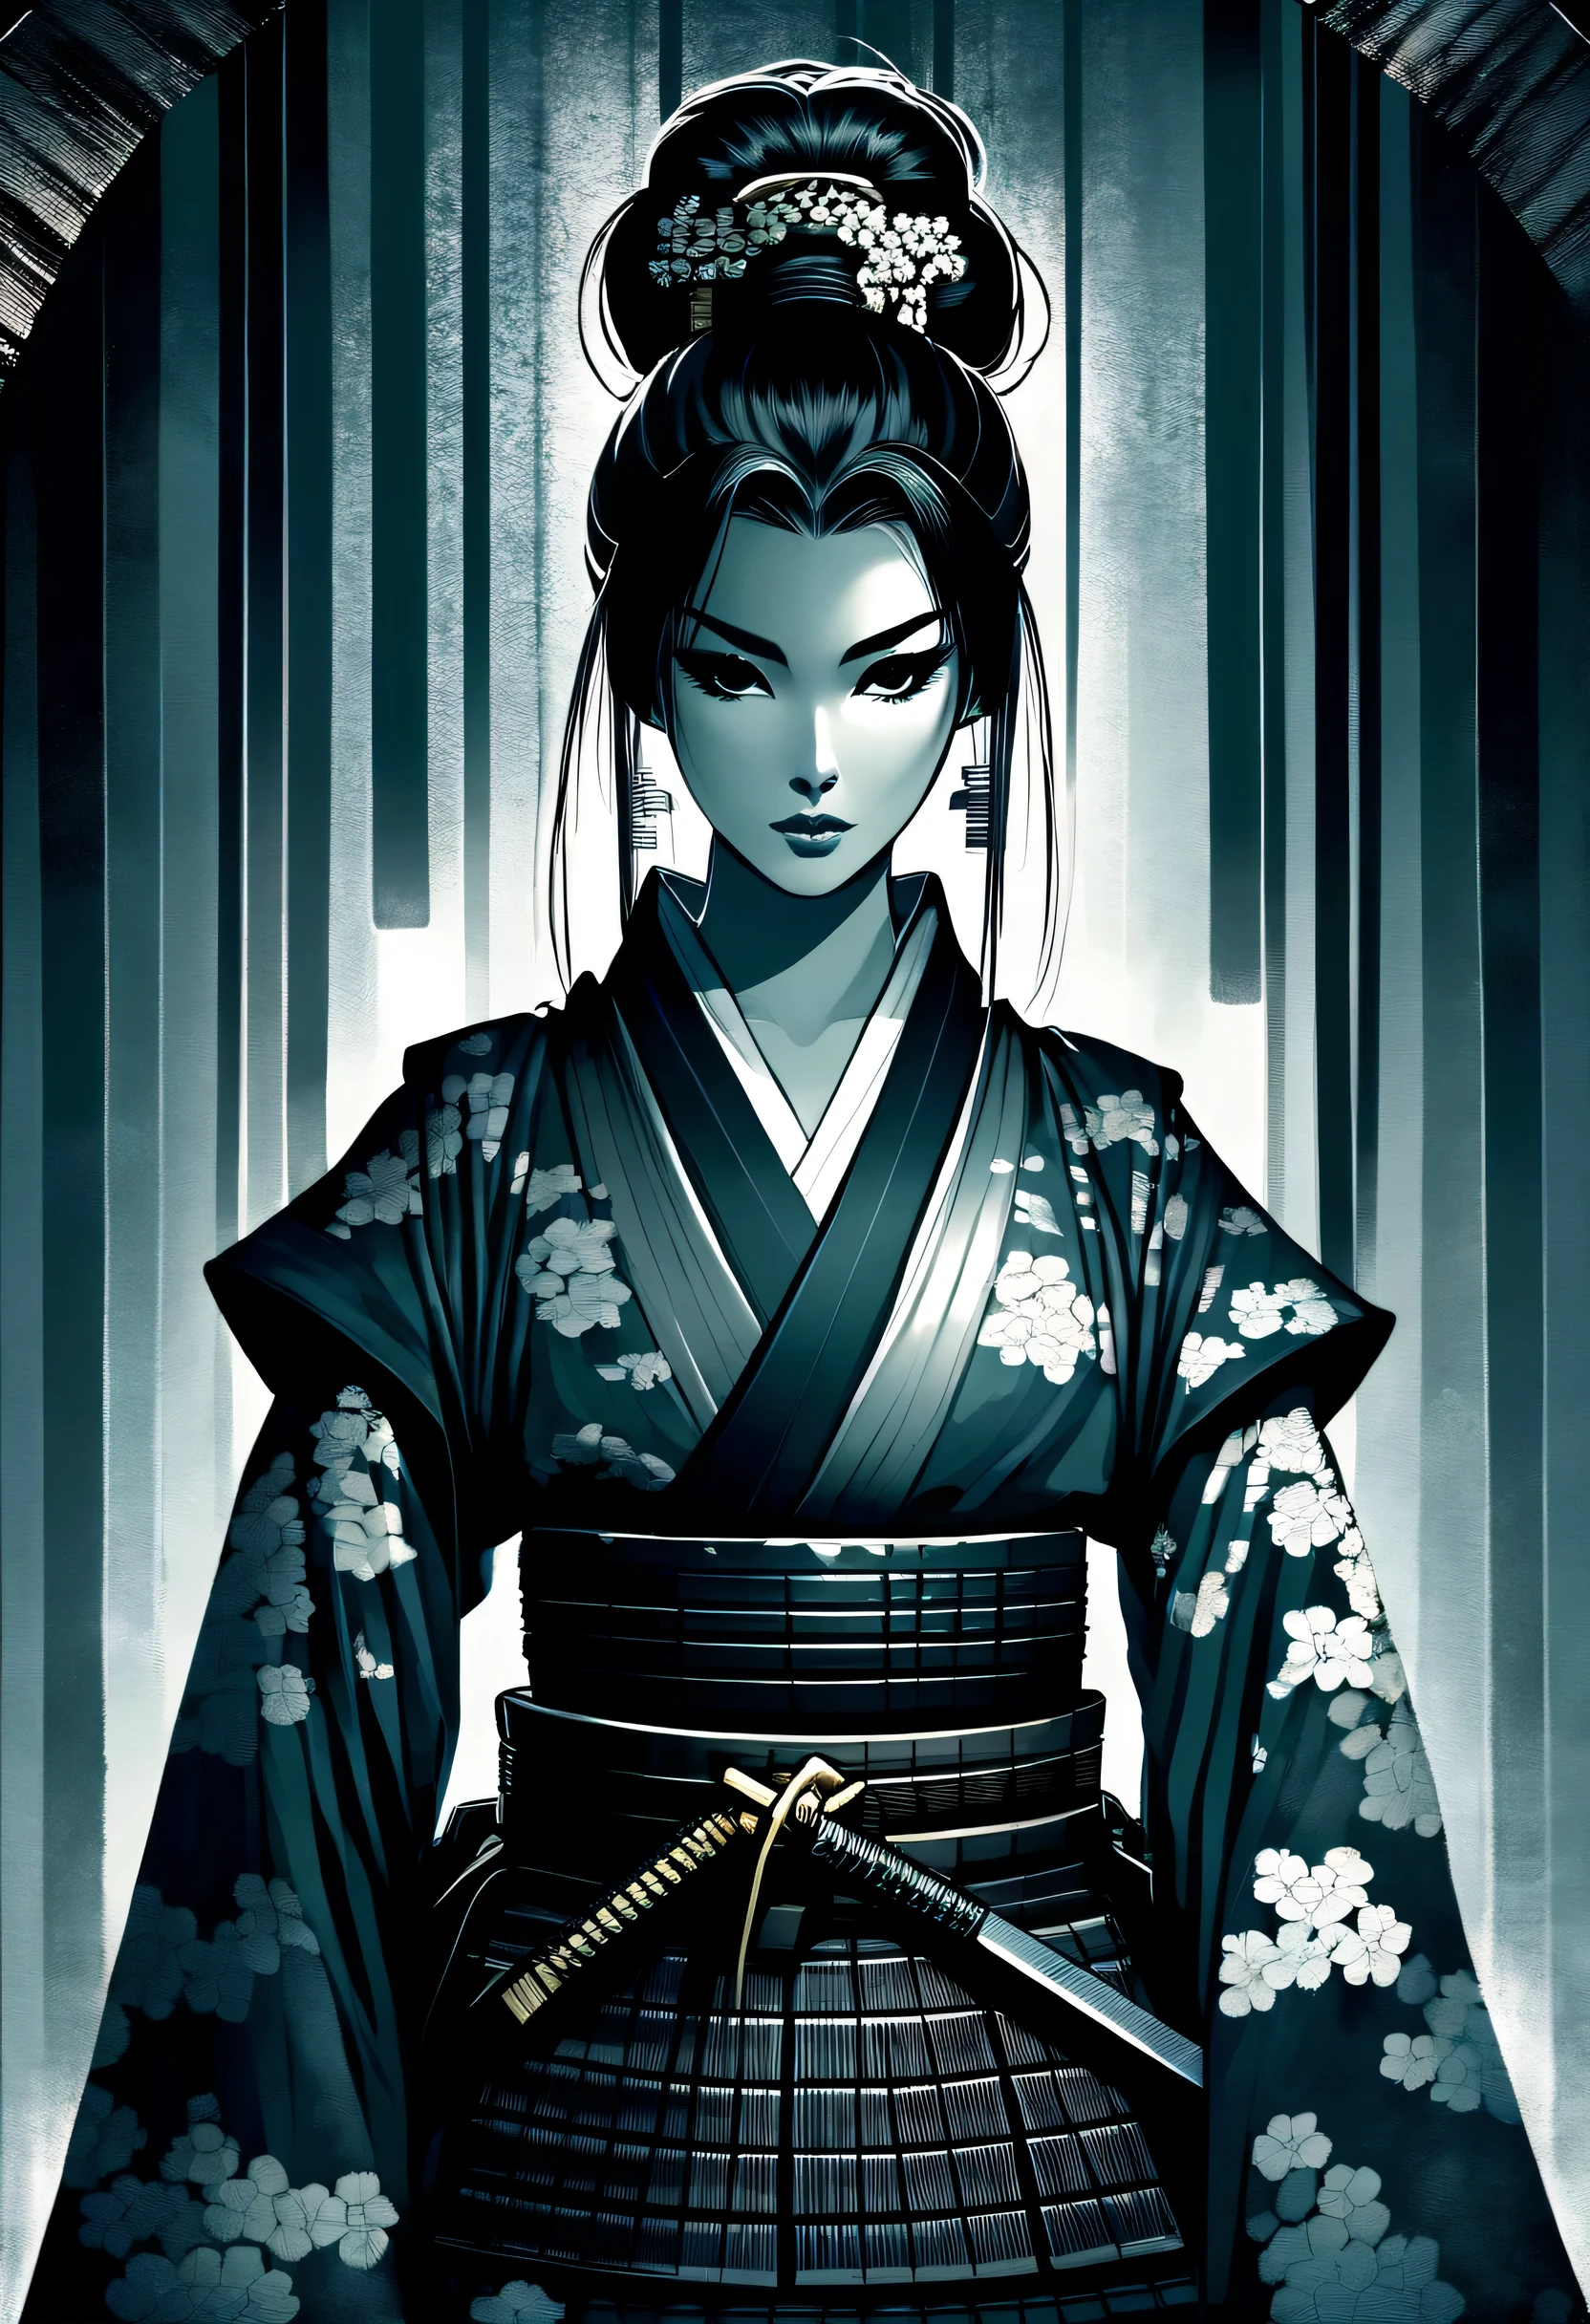 allein, Ein außergewöhnlich schönes Samurai-Mädchen fällt auf, Zartes Gesicht mit einem Haarknoten geschmückt, intensivere Aura. Mit dunklen Fantasy-Illustrationen, Zu berücksichtigende Leistung, Die umgekehrte dreieckige Gesichtsform verstärkt Eleganz und Eleganz, Die feinen Gesichtszüge eines Samurai, Hervorgehoben mit tollen Illustrationen, Der wilden Samurai-Persönlichkeit wurde Weiblichkeit verliehen, Erst die Atmosphäre verleiht der beeindruckenden Schönheit, Erstellen Sie einzigartige und visuell vielfältige Illustrationen, Ein hochgewachsenes Samurai-Mädchen mit zarten Gesichtszügen und Haarknoten, Verbessert die Eleganz und Eleganz der Schatten, Nur Dark-Fantasy-Setting, Füge deinen fesselnden Charakteren Details hinzu, Kreative und interessante Eingabeaufforderungsfunktion, Mit dunklen Fantasy-Illustrationen奥行きを表現, Erstellen Sie visuell einen einzigartigen Pinselstrich-Hintergrund für einen bereits beeindruckenden Schönheitshintergrund, Beschreibende und komplexe Detailthemen für Abbildungen,